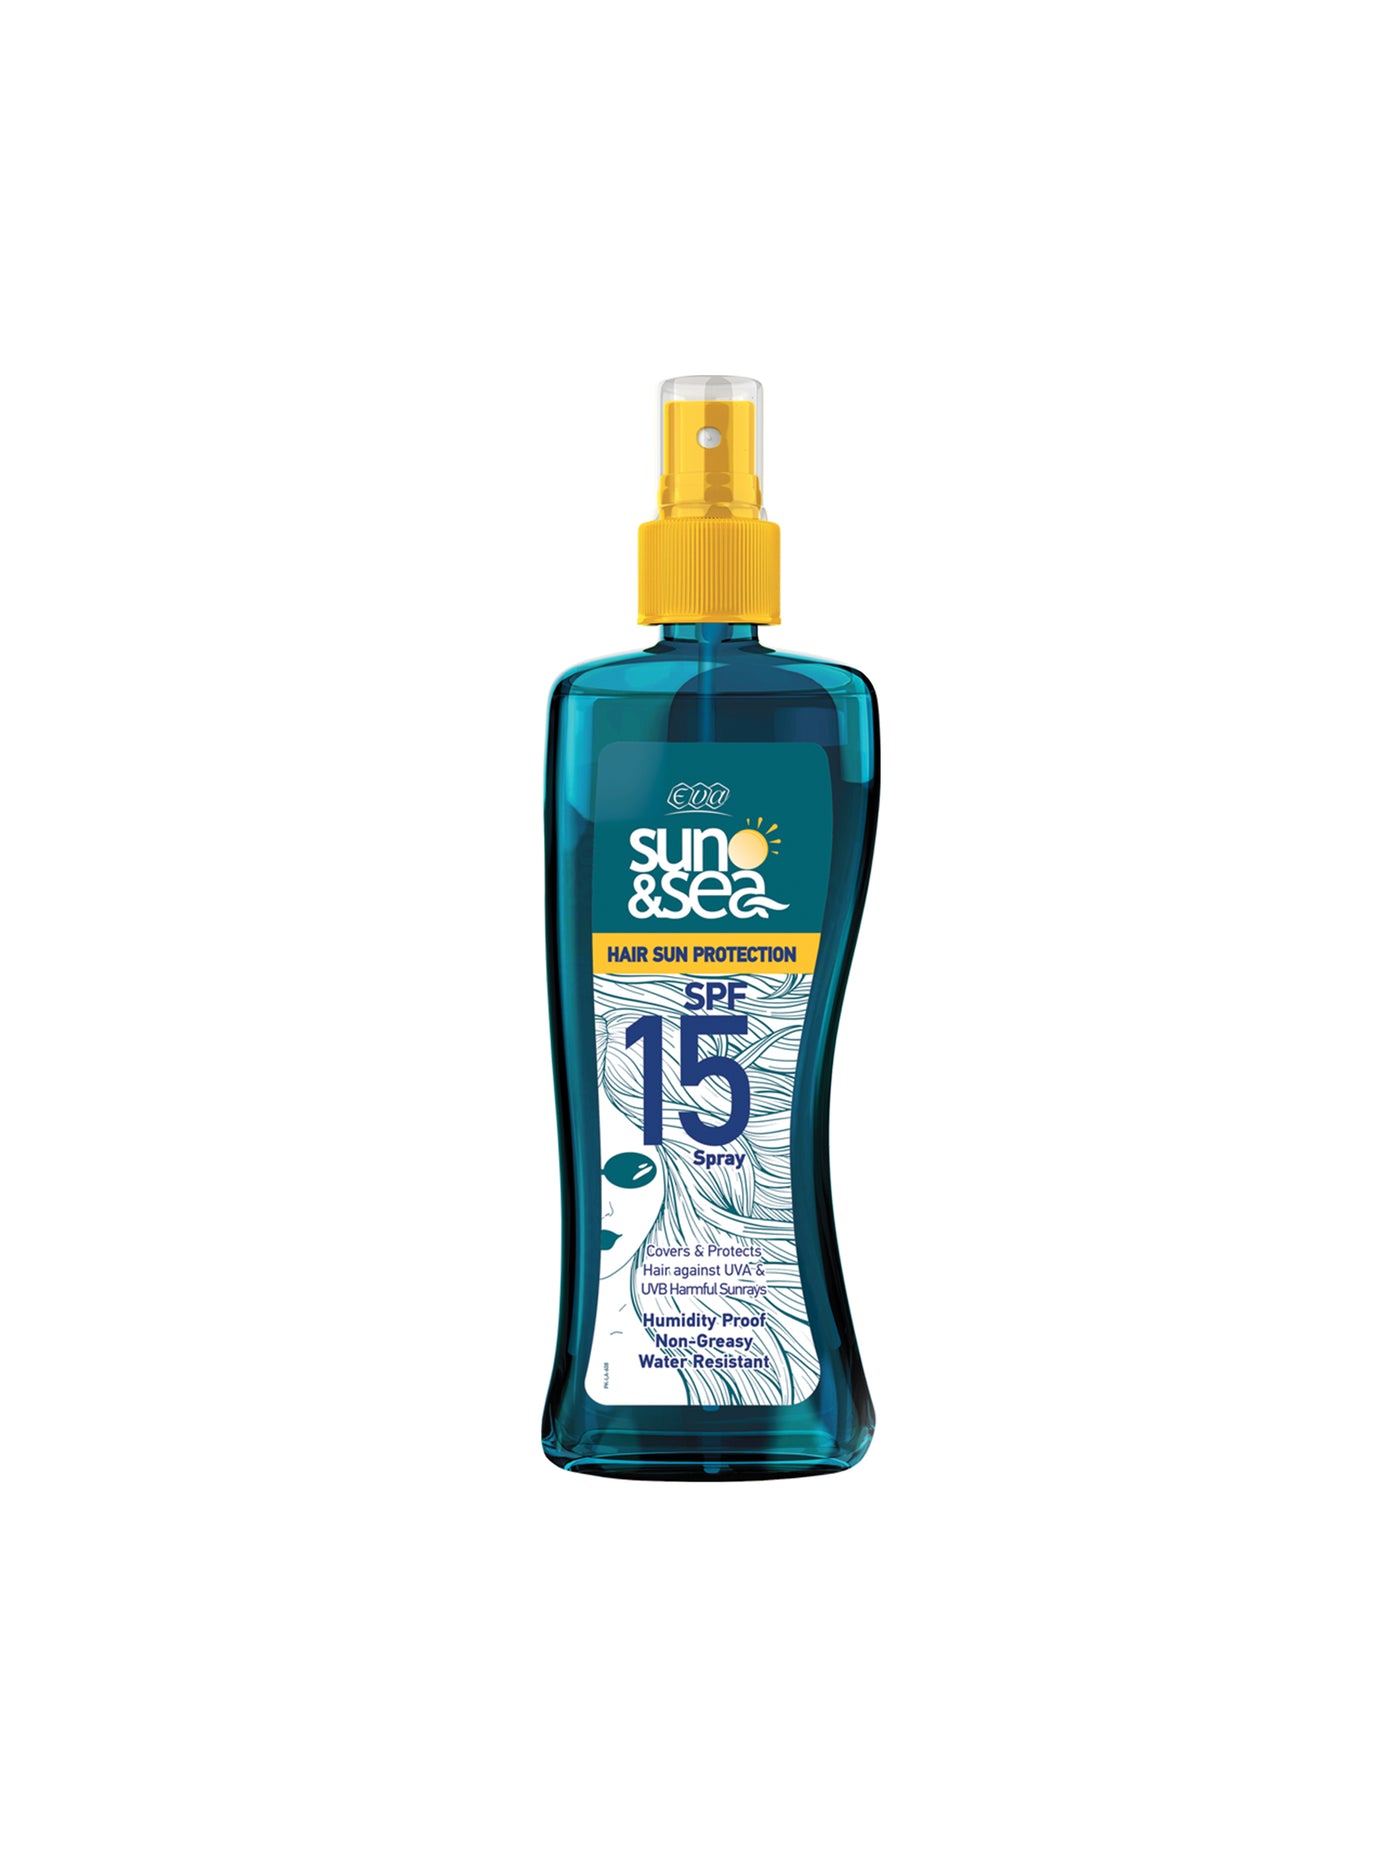 Eva Sun&Sea Hair Sun Protection Spray Liquid SPF 15